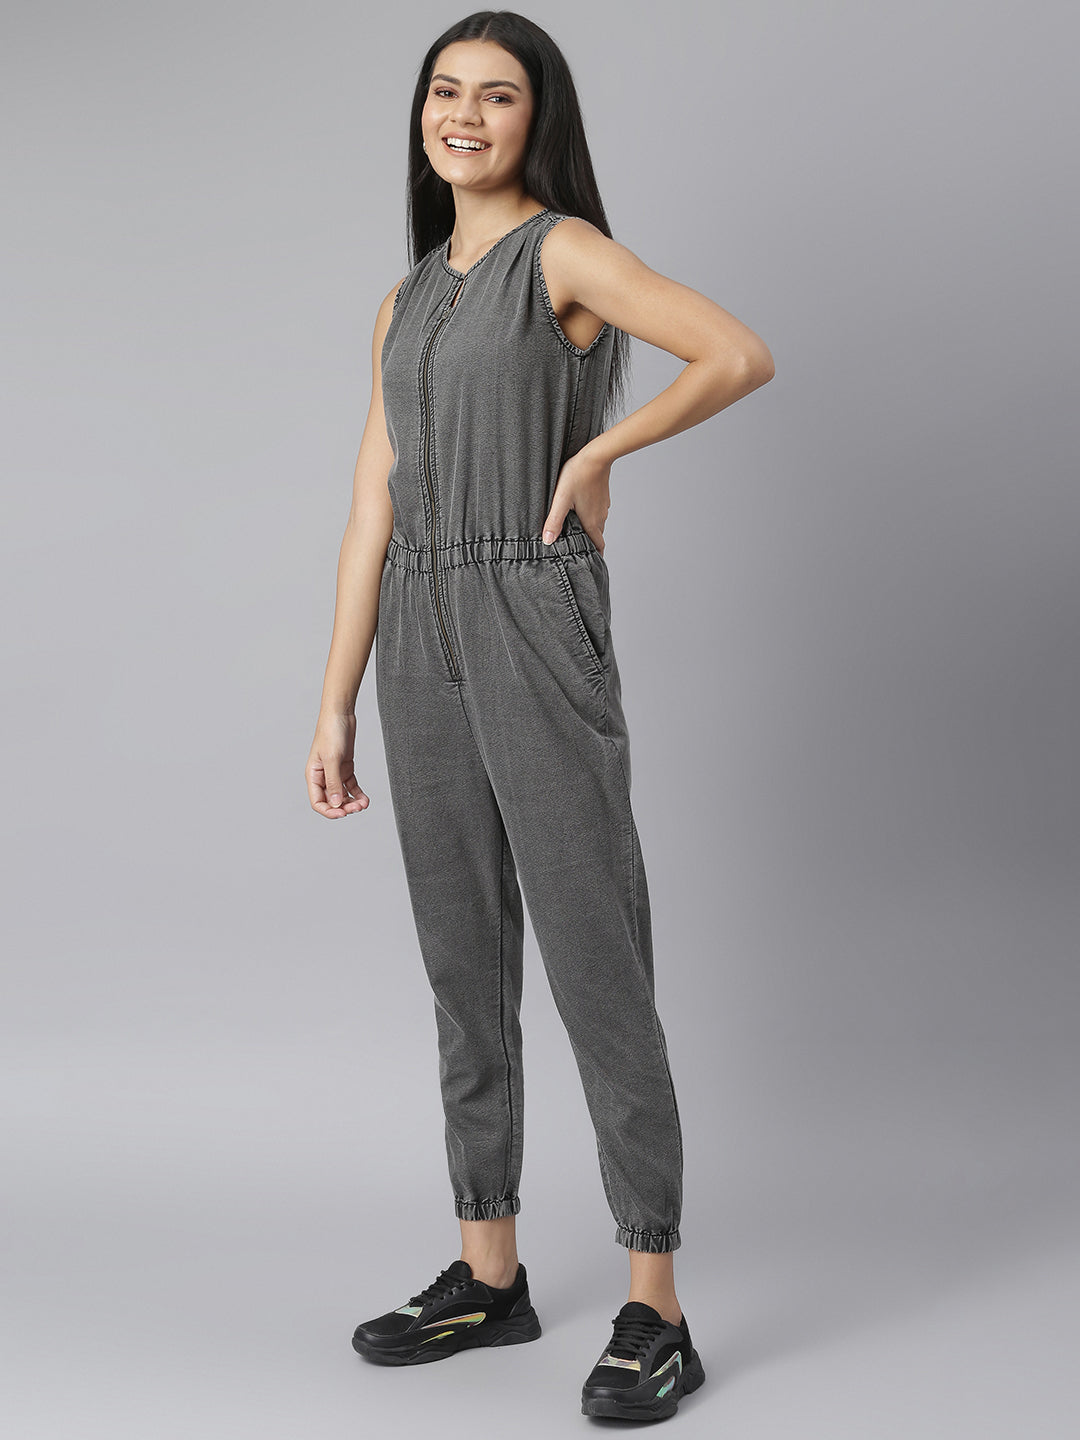 Women's Grey Denim Jumpsuit with front Zip